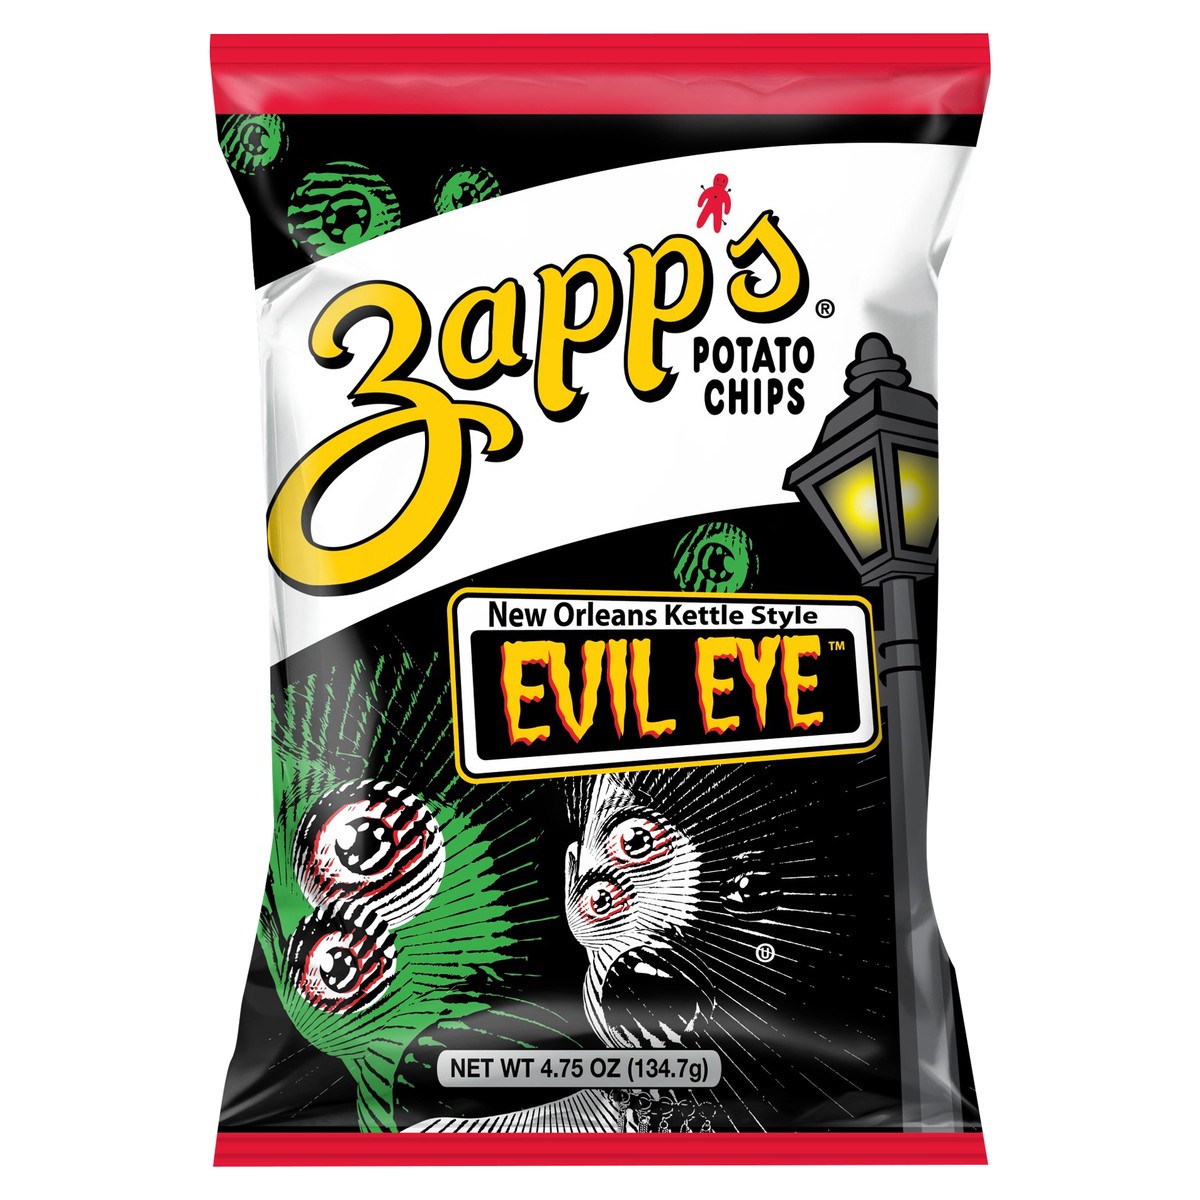 slide 1 of 11, Zapps Potato Chips Evil Eye New Orleans Kettle Style Potato Chips, 4.7 oz